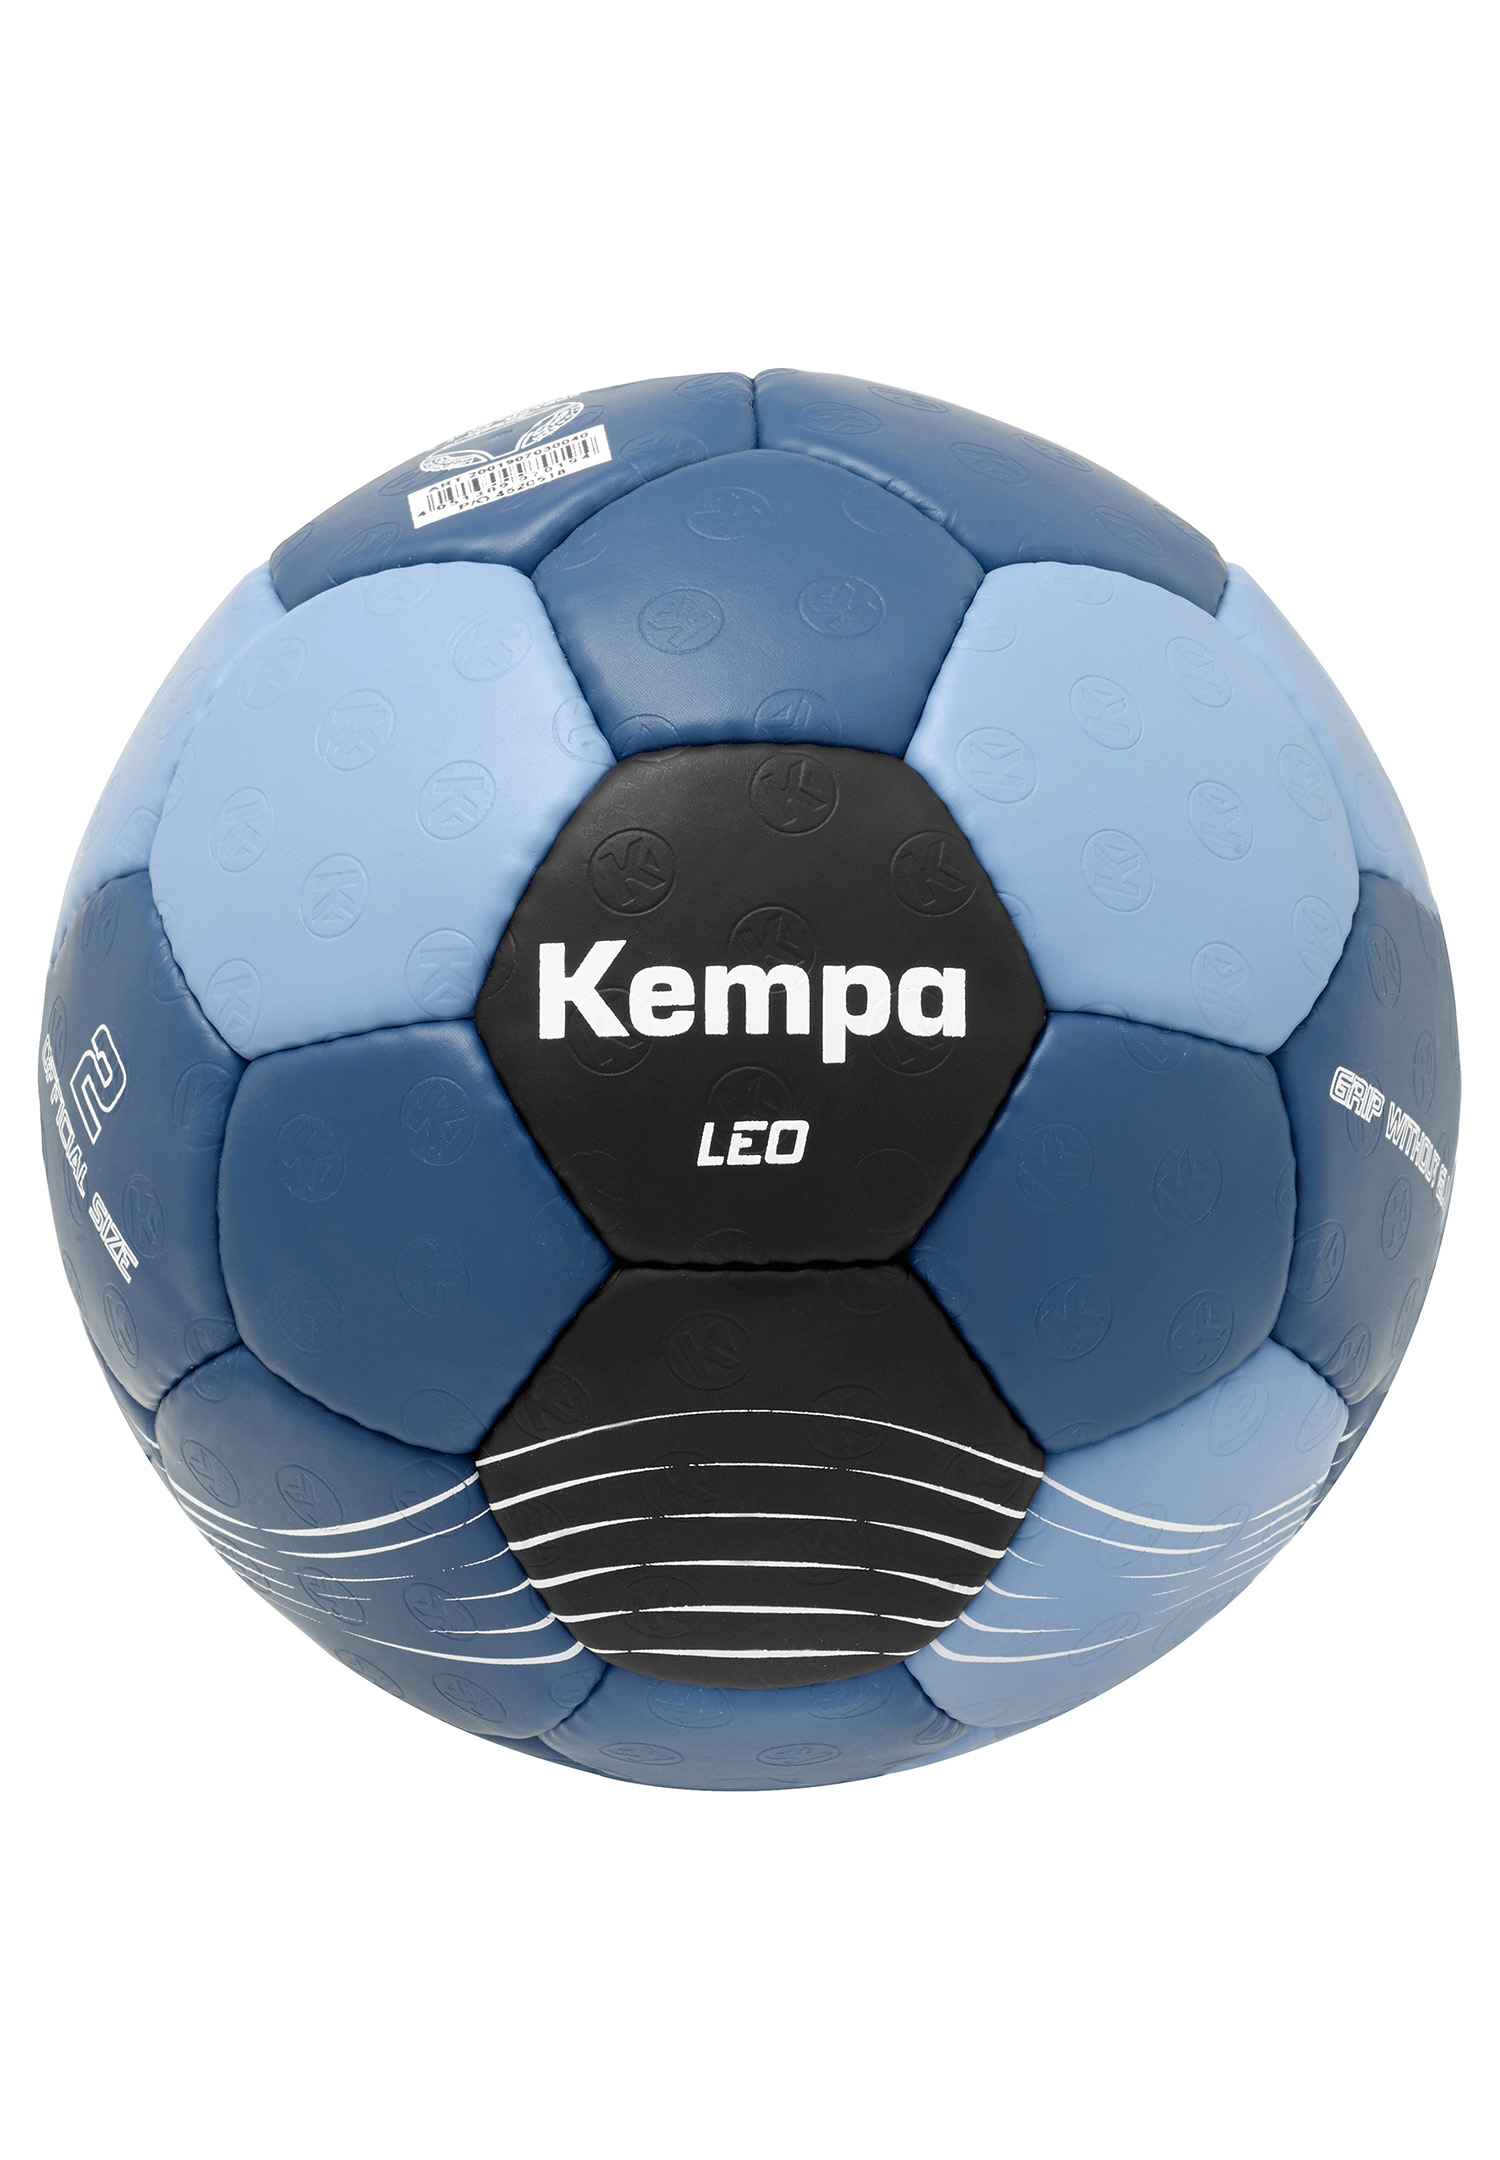 Kempa Handball Leo Size 2 200190703 blue/black